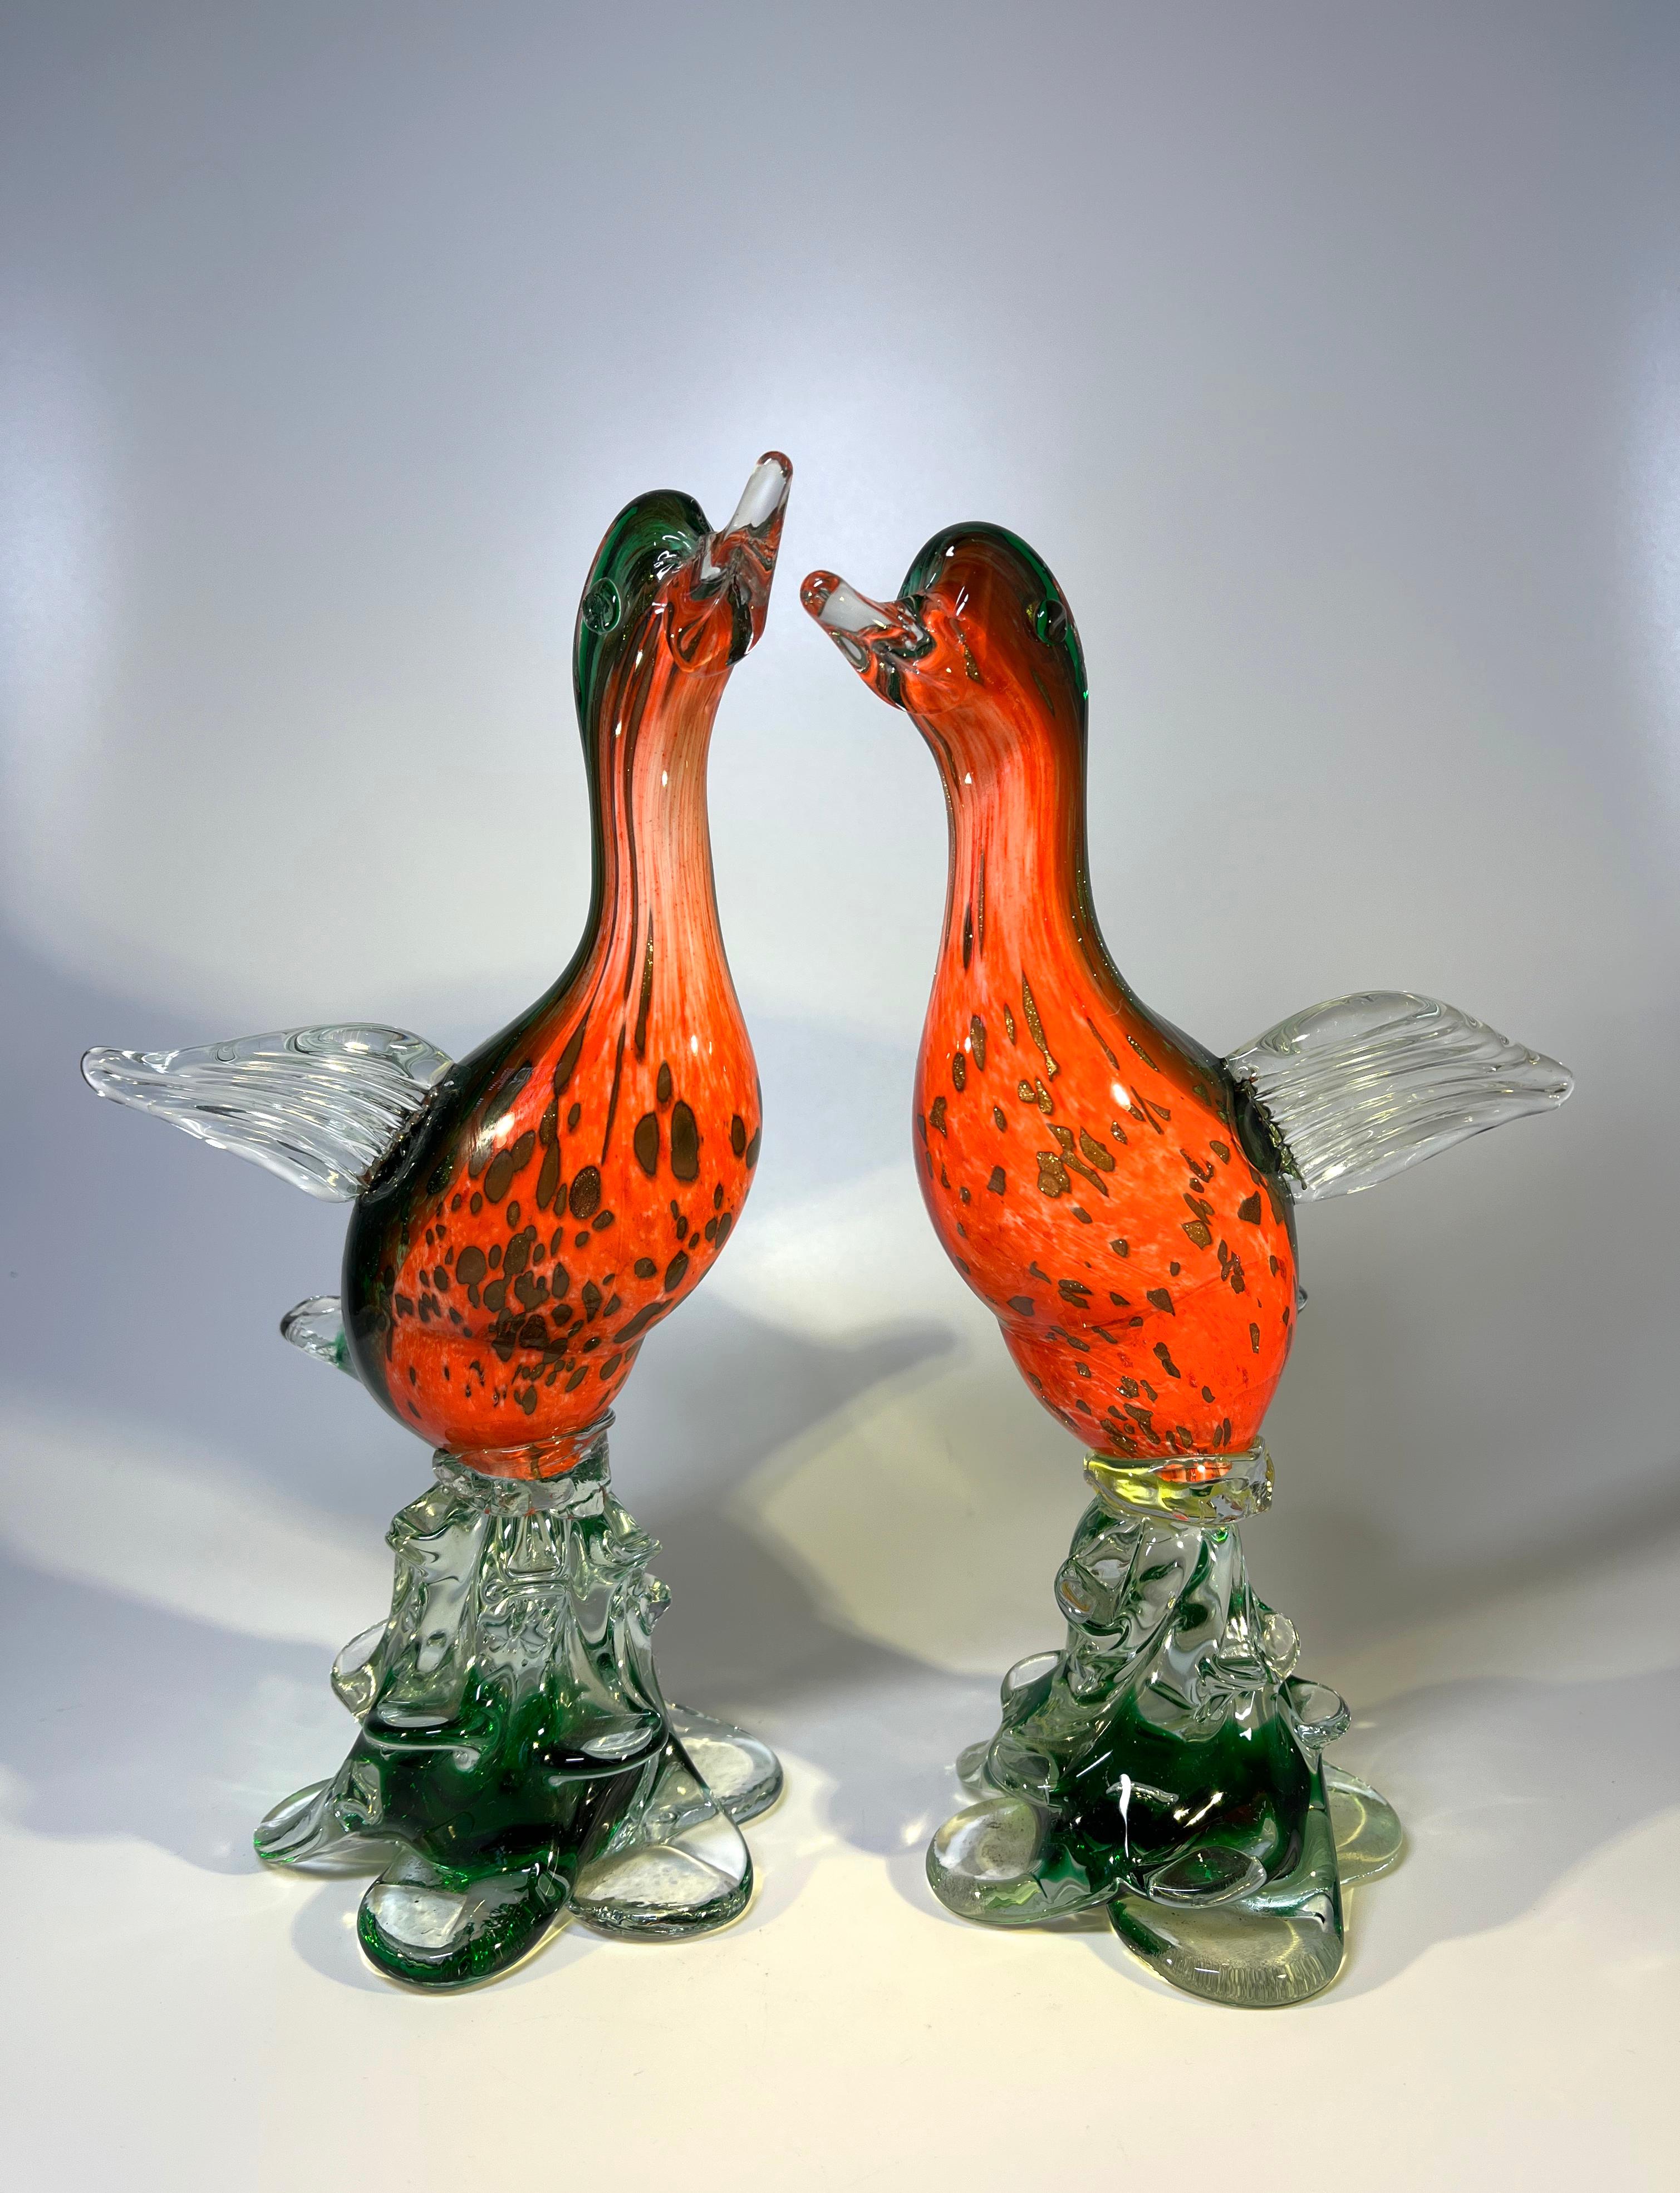 Une paire expressive d'oiseaux en verre de Murano aux couleurs vives
Superbement soufflé à la main avec du verre rouge cramoisi, de l'avventurine étincelante, du vert émeraude riche et du verre cristallin.
Circa 1960's
Une paire substantielle et